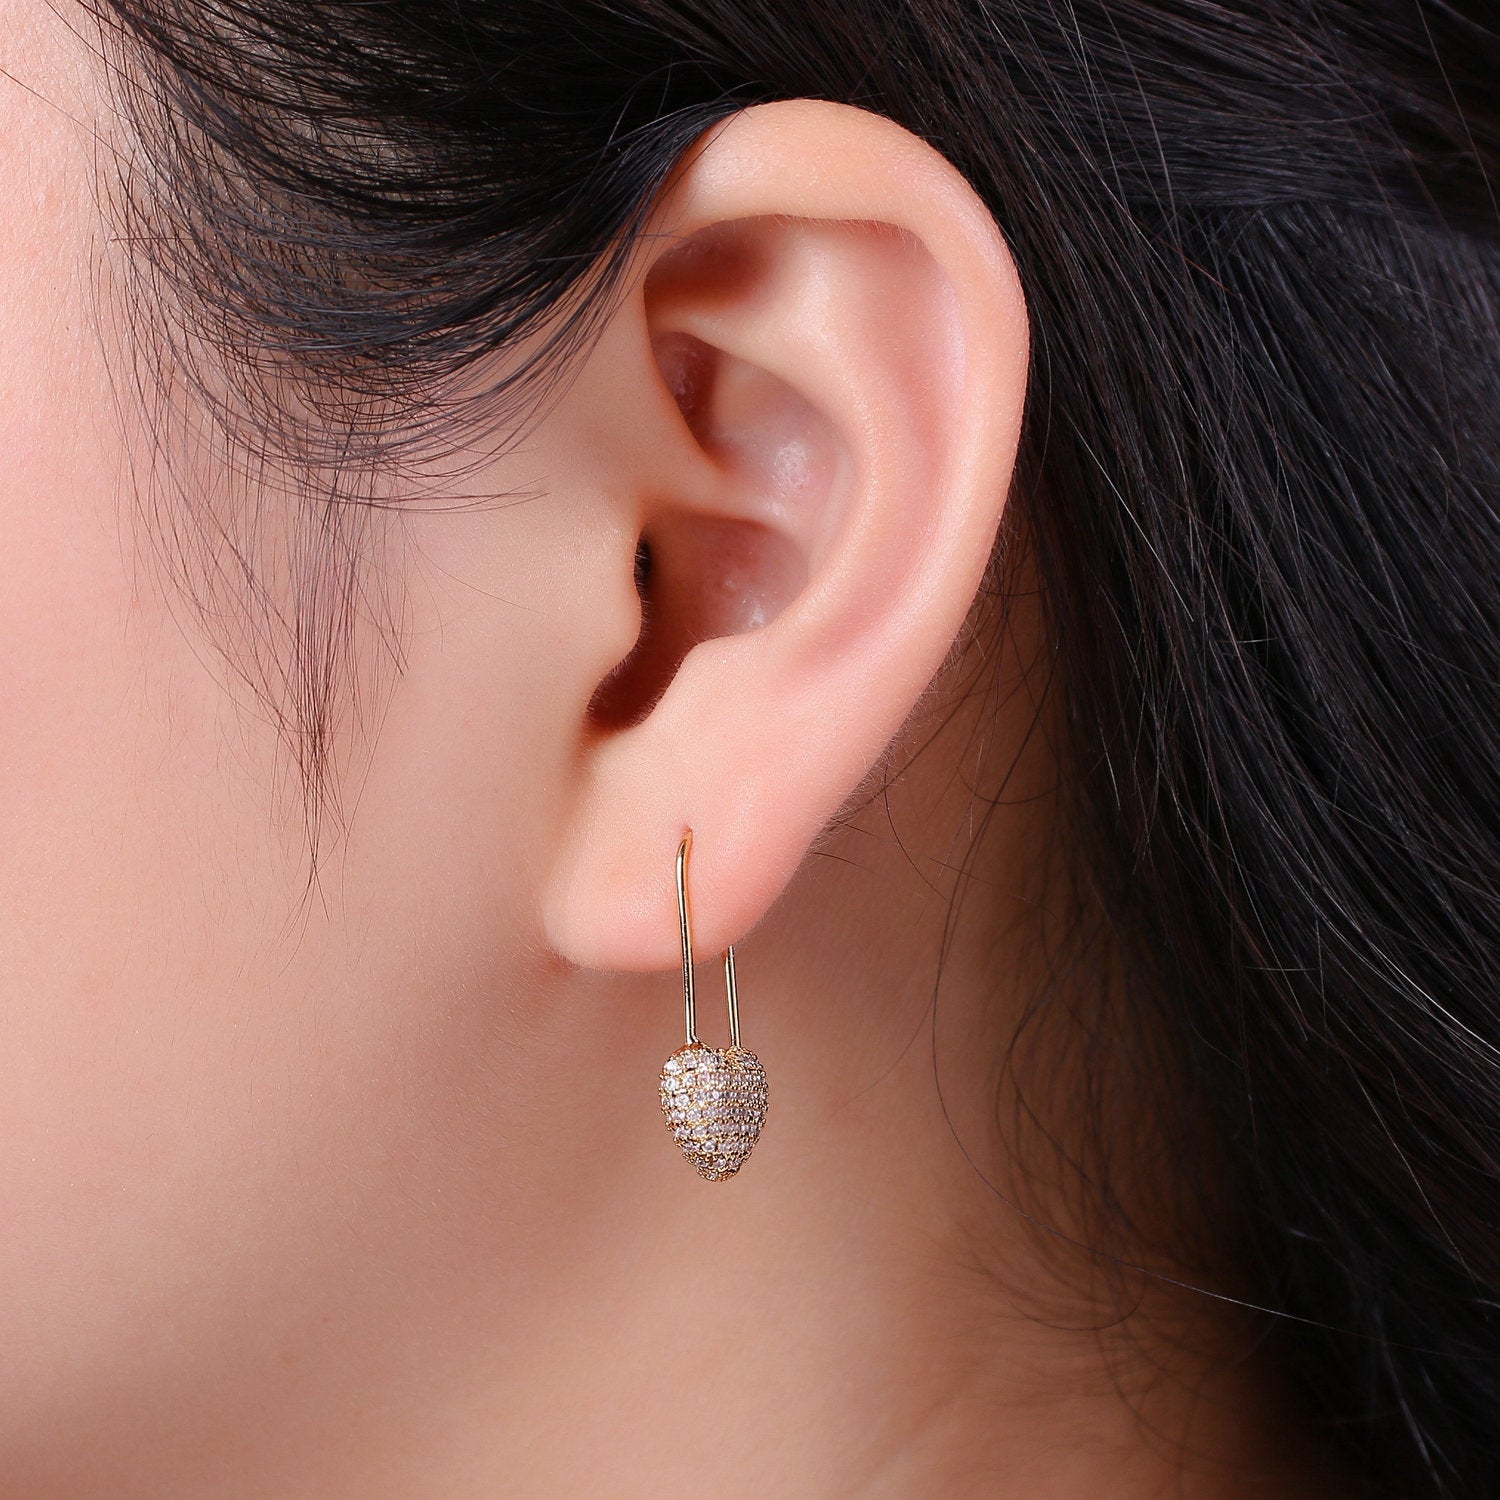 1 Pair Gold Heart earrings Pin earrings Heart jewelry Unique earrings Unique jewelry Gold earrings Dainty earrings Delicate Earrings - DLUXCA